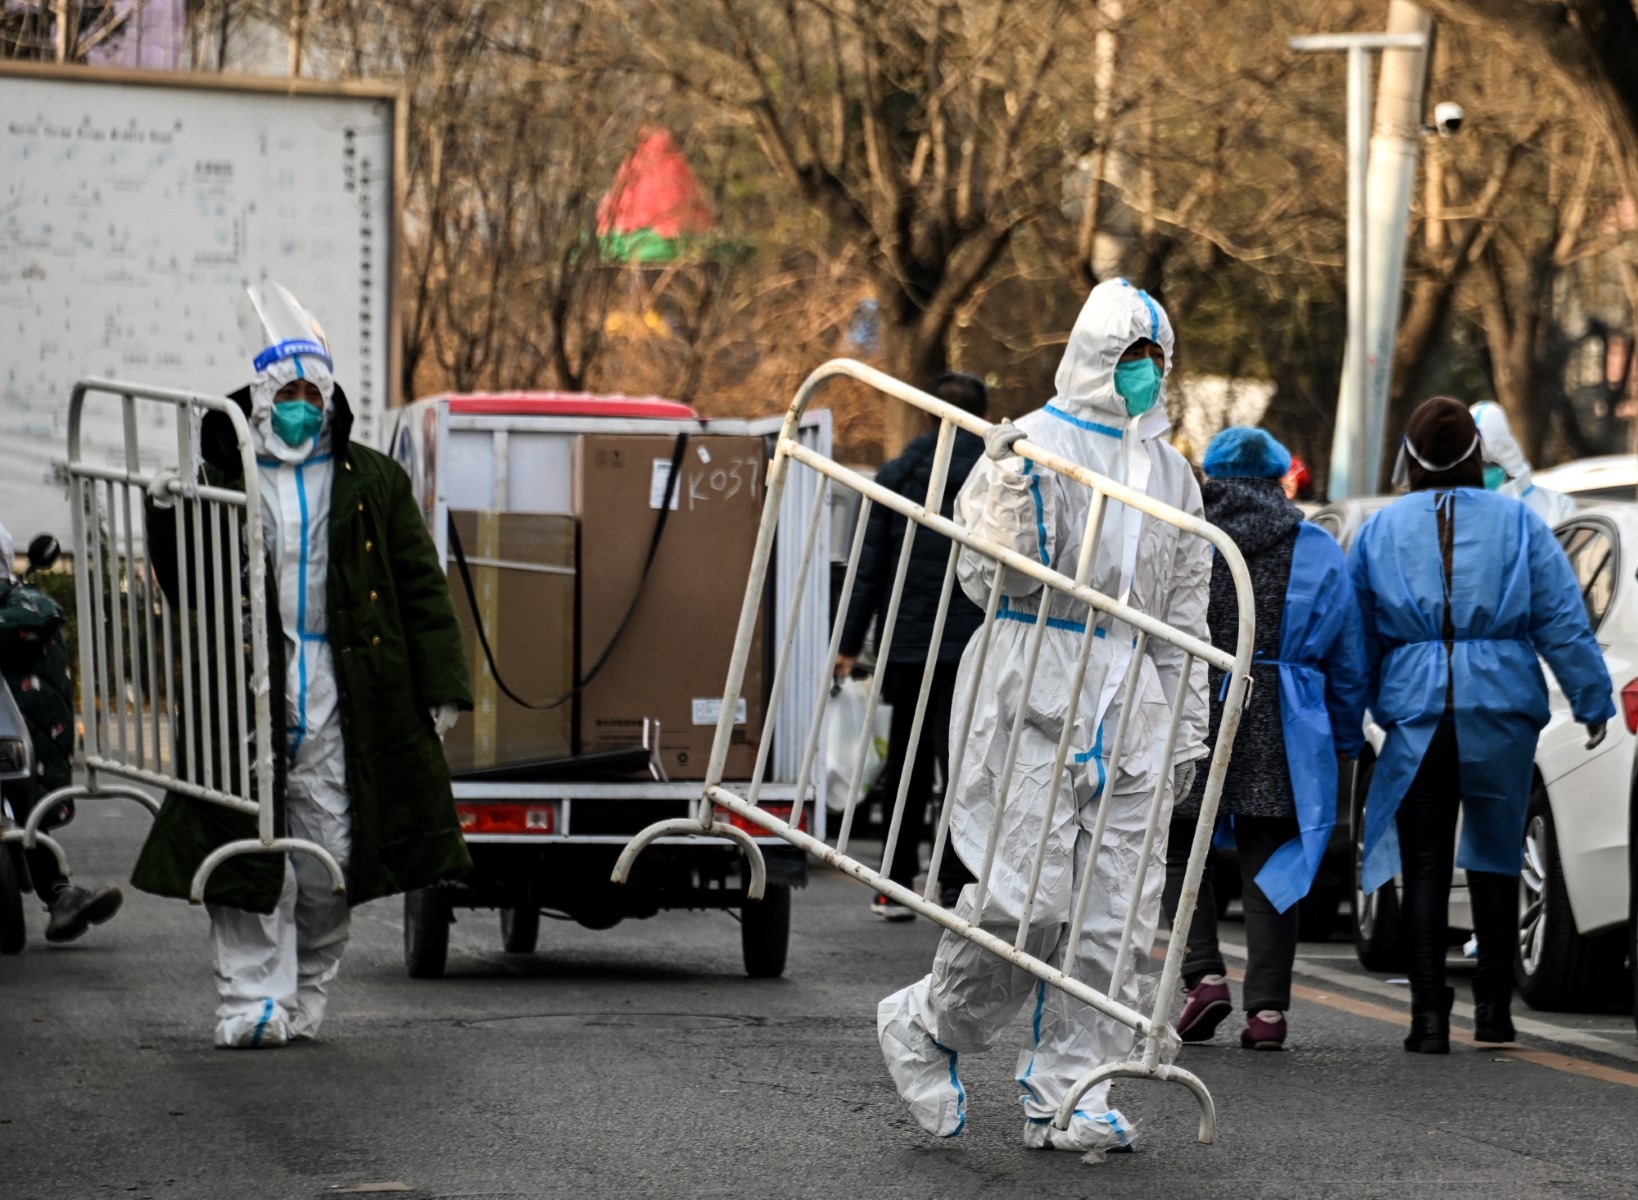 Nhân viên y tế mang theo rào chắn trong một khu dân cư vừa mở cửa sau đợt phong tỏa COVID-19 ở Bắc Kinh tháng 12.2022. Ảnh: AFP